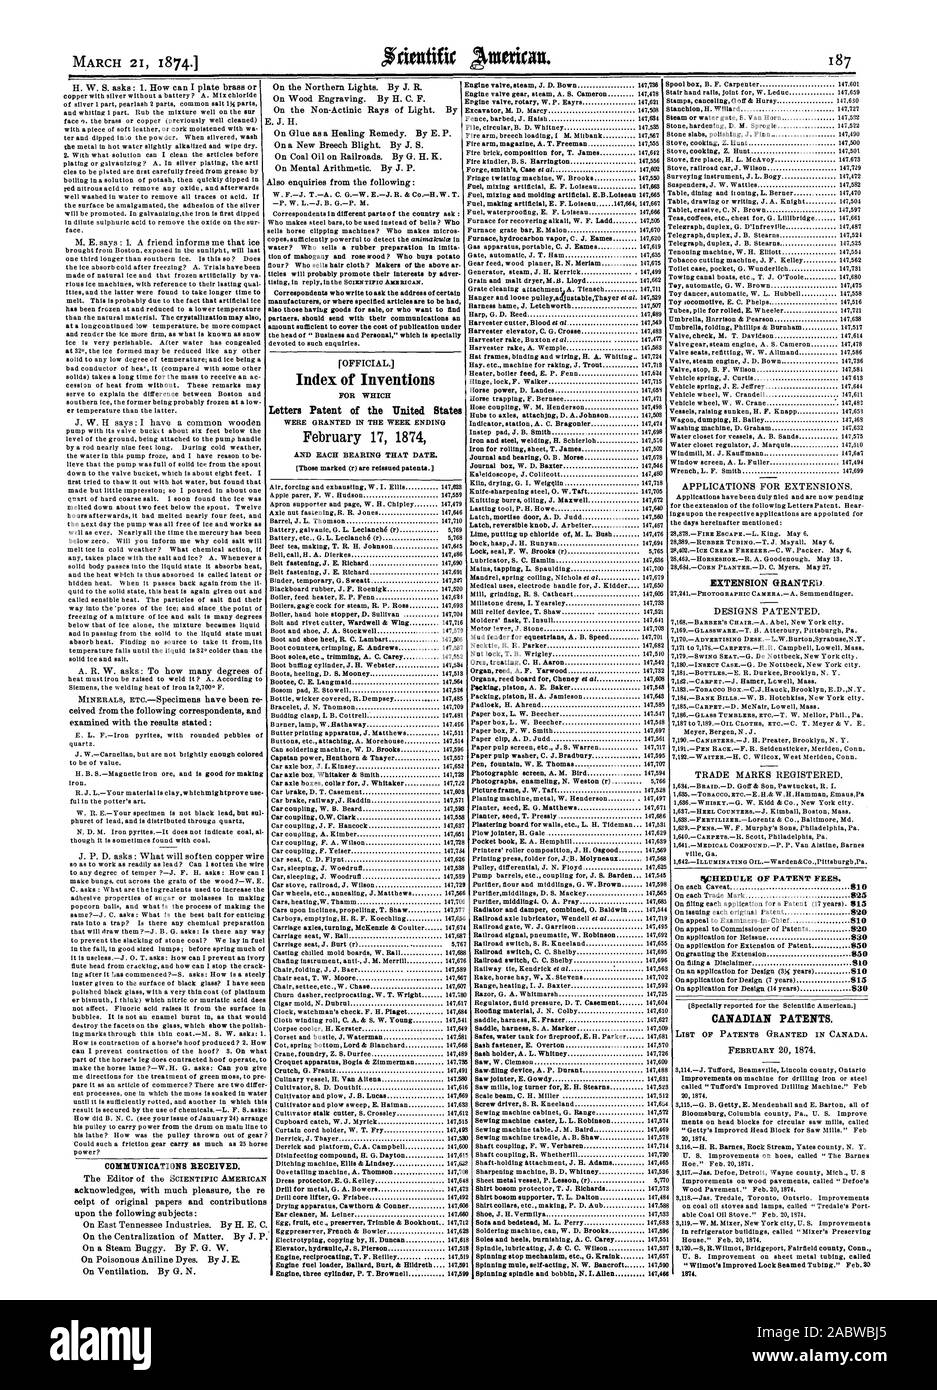 Índice cartas patentes de invenciones de los Estados Unidos el 17 de febrero de 1874 prórroga concedida. FiCHEDULE DE DERECHOS DE PATENTE. Las patentes canadienses., Scientific American, 1874-03-21 Foto de stock